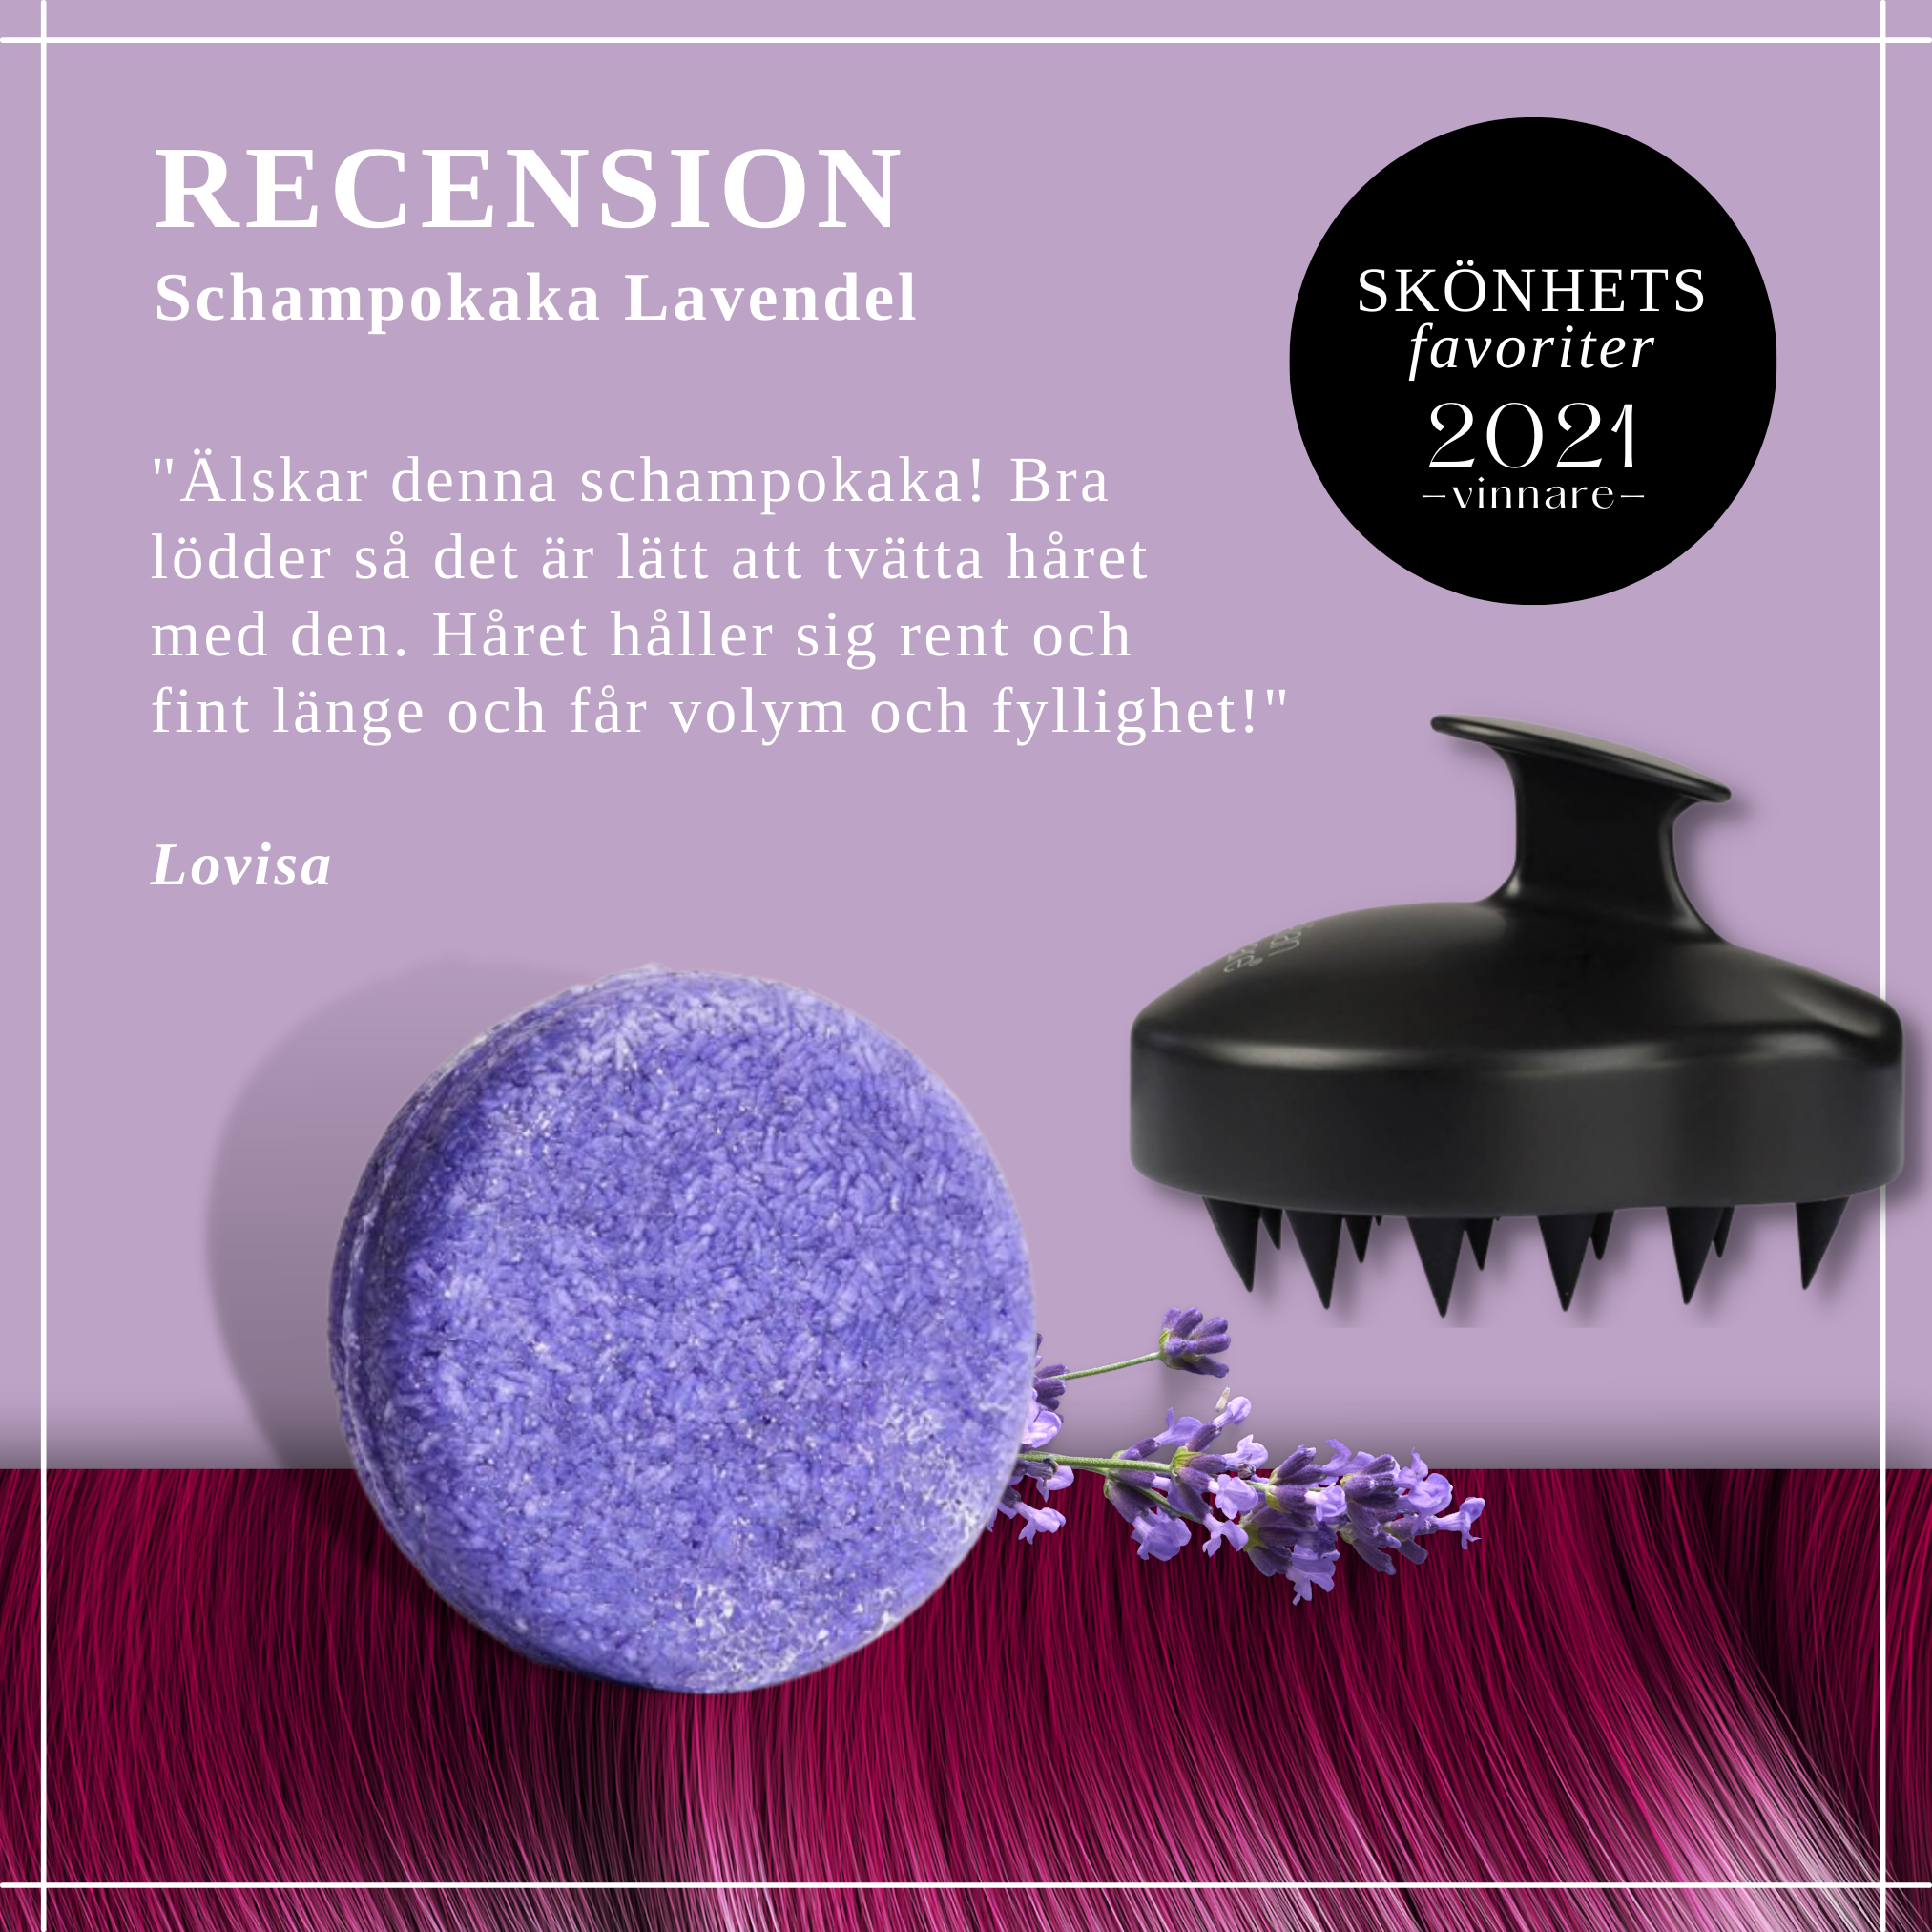 Schampokaka Lavendel, Radical Moisture Shampoo